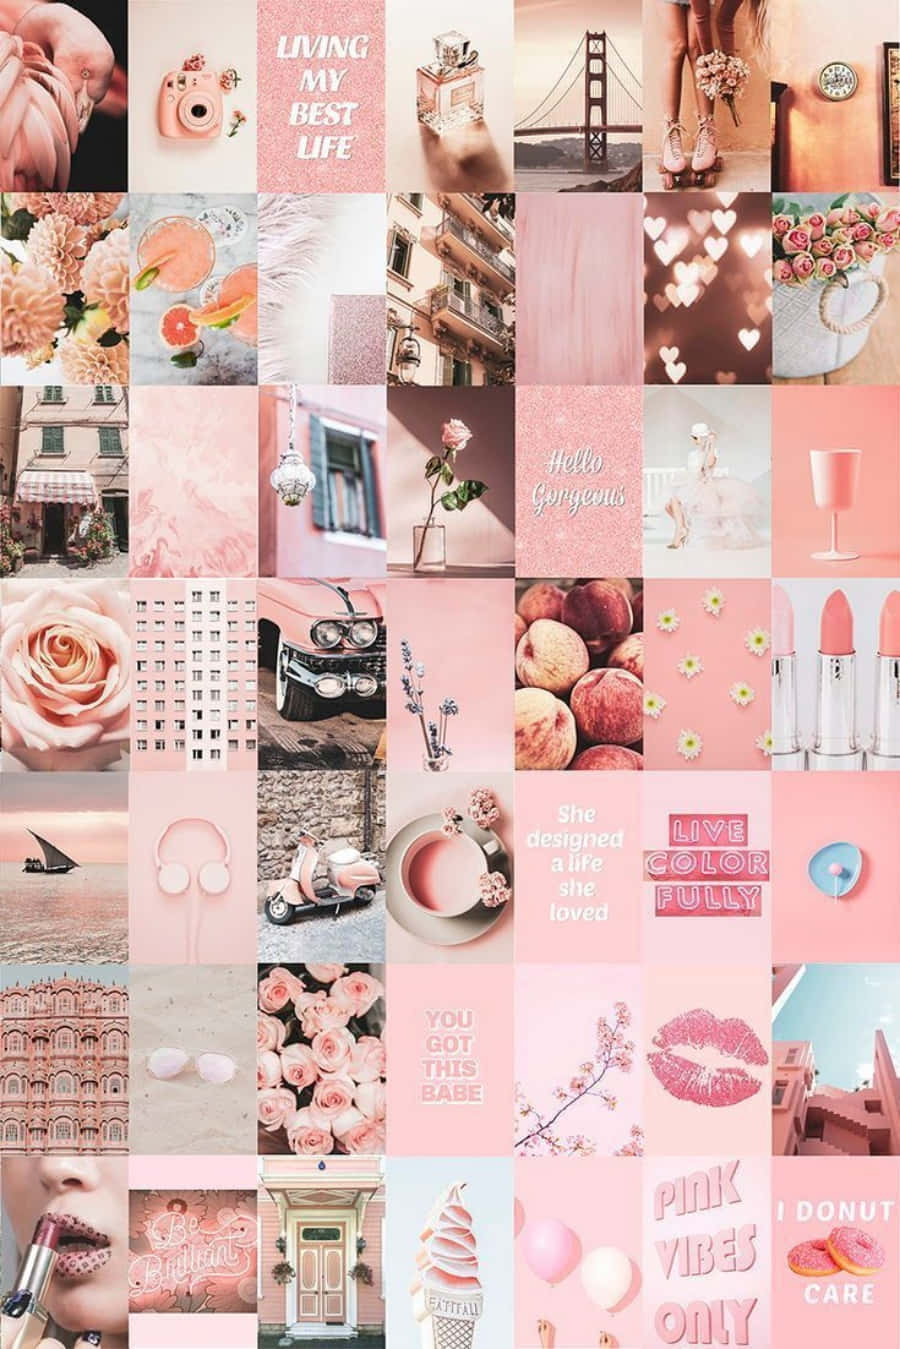 Genießensie Diese Wunderschöne Ästhetische Rosa Collage, Um Ihrem Leben Etwas Mehr Farbe Und Stil Zu Verleihen. Wallpaper